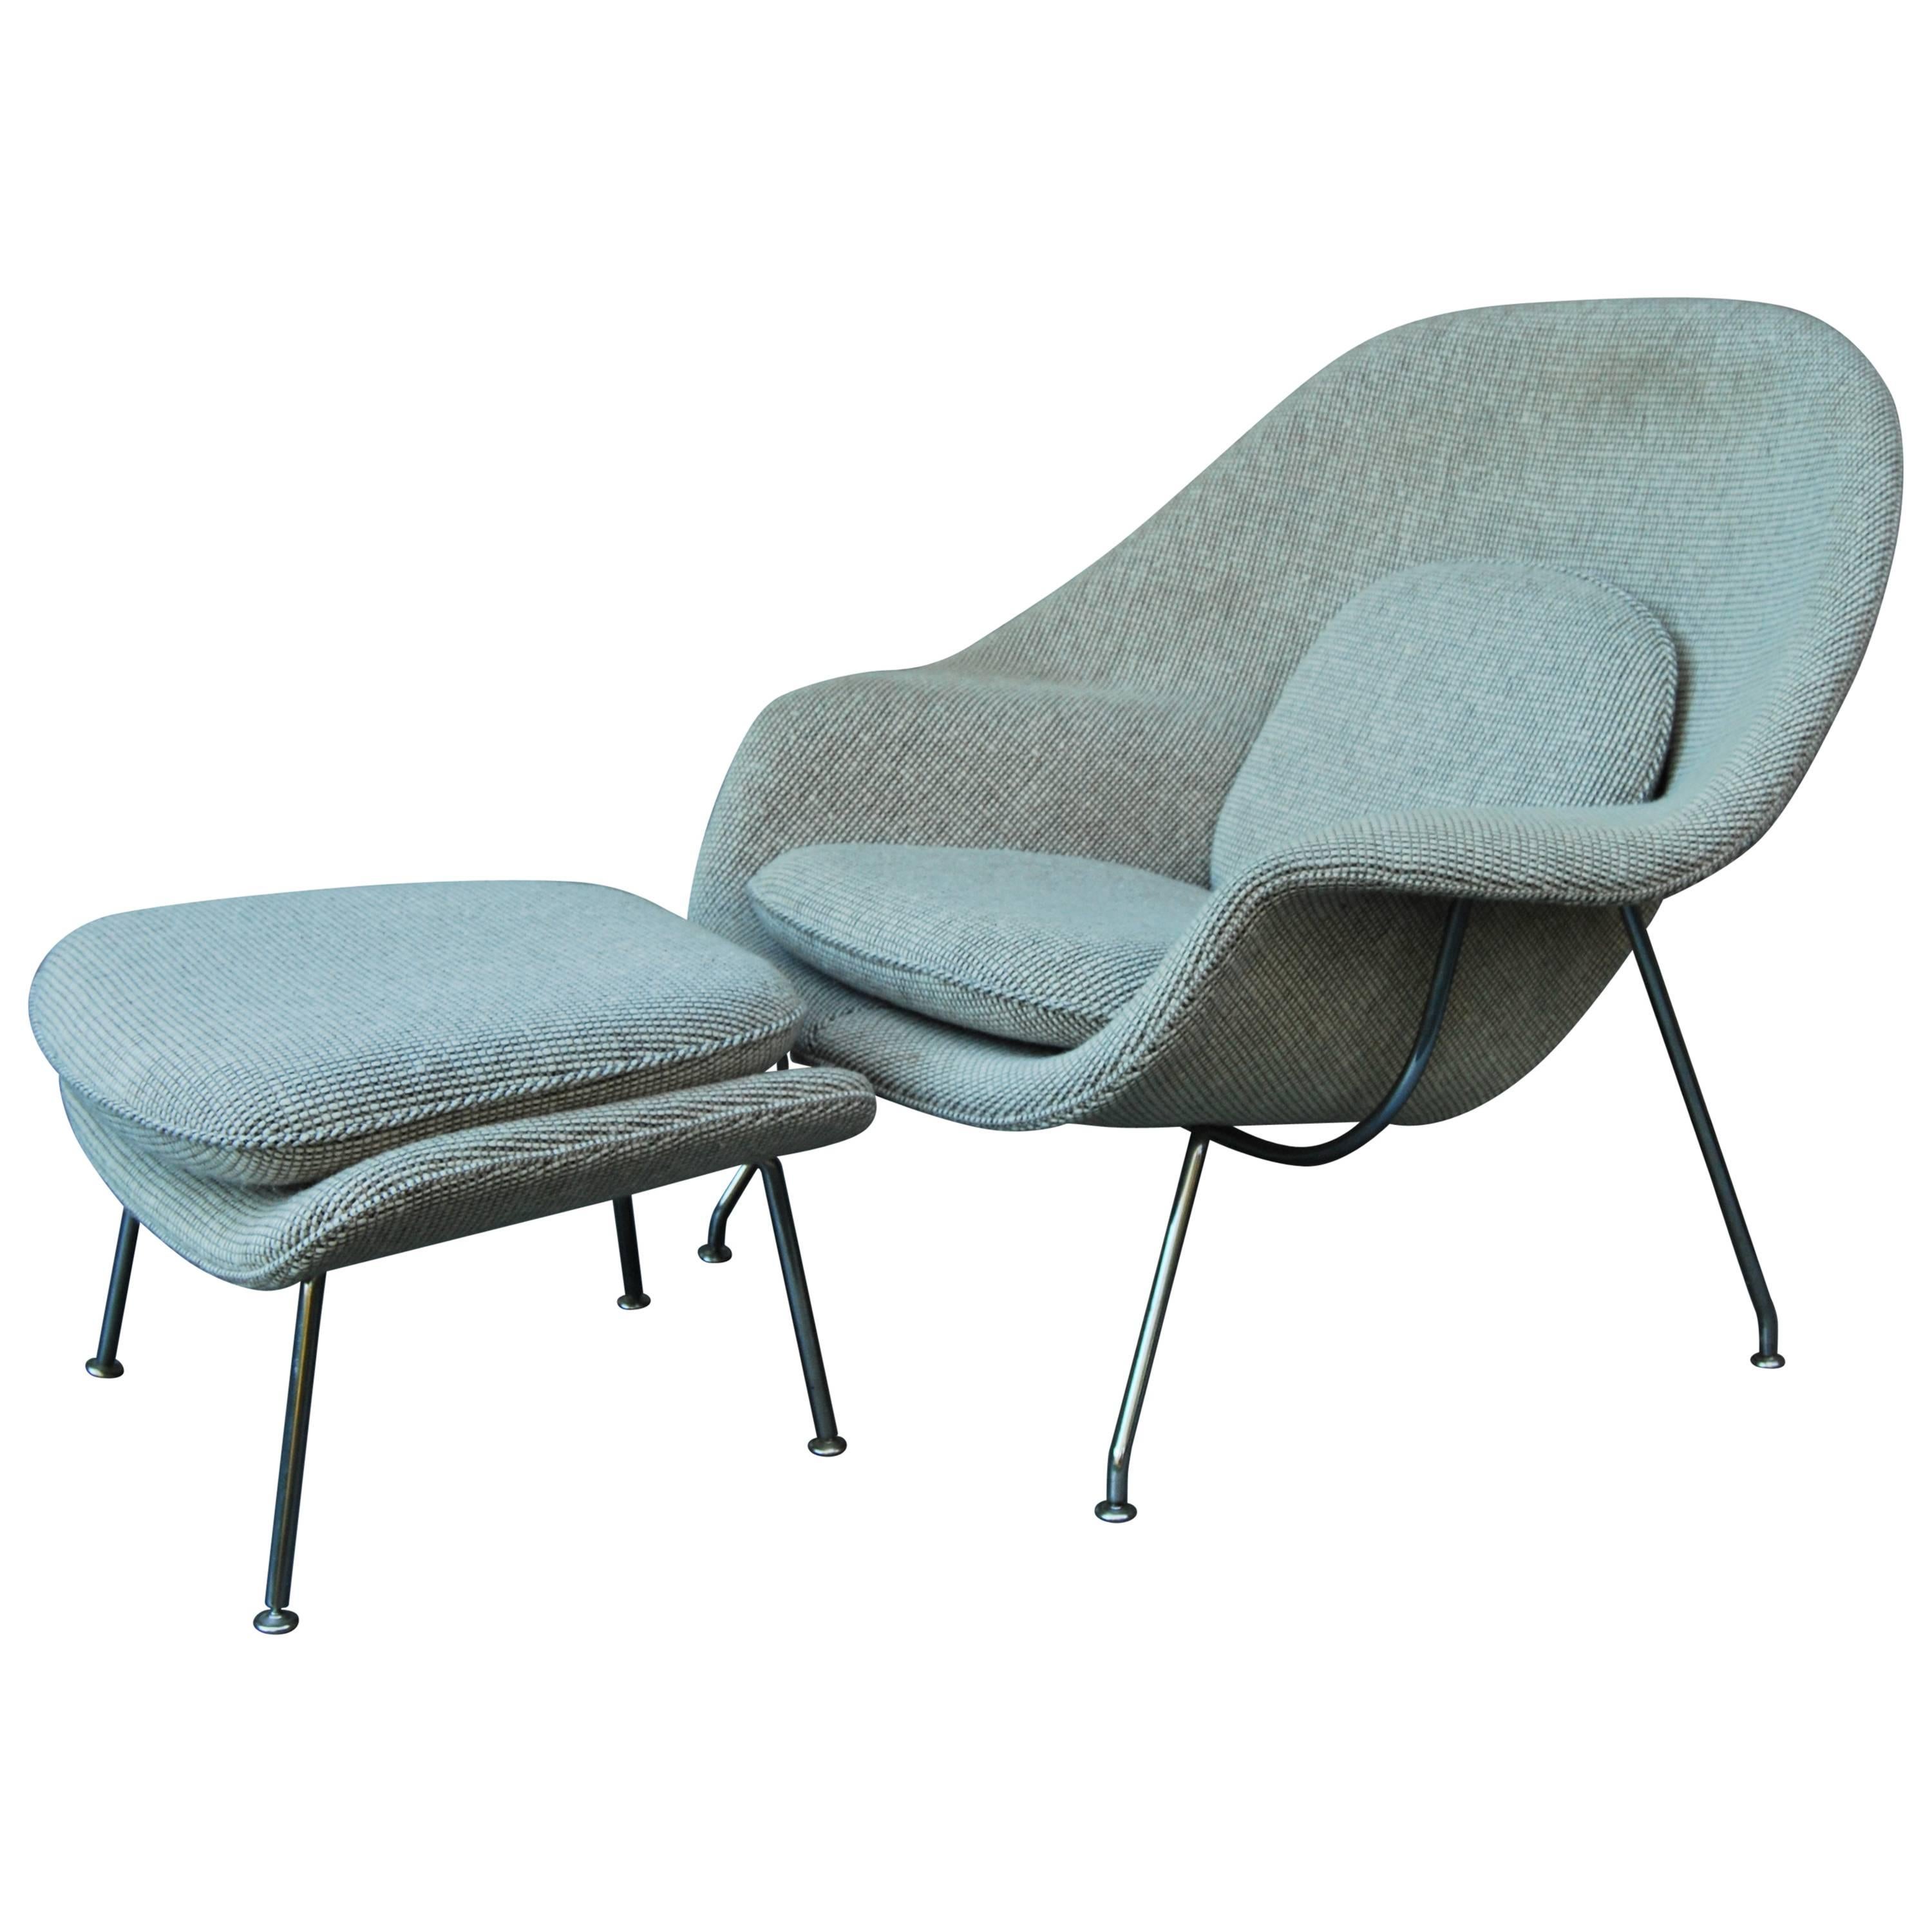 Eero Saarinen "Womb" Chair and Ottoman